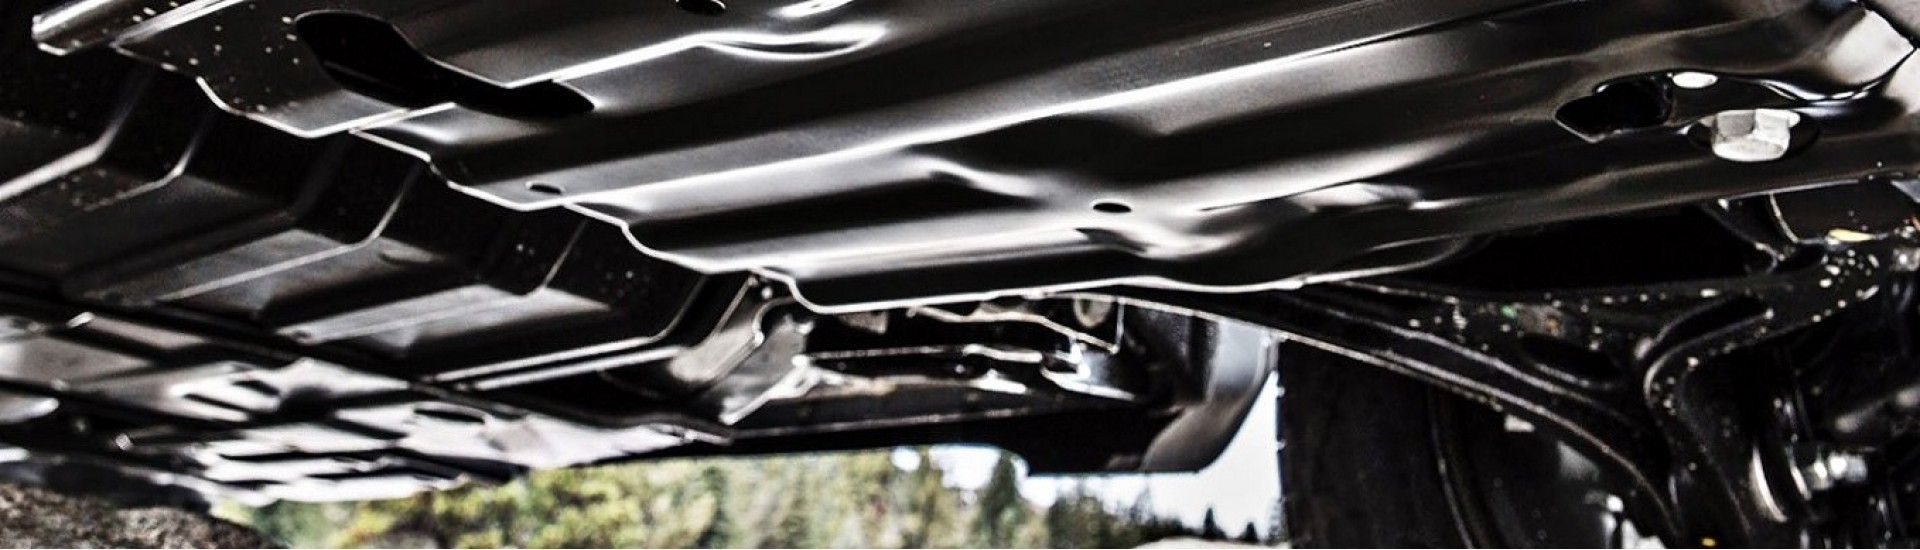 سینی زیر موتور بیسو E33 